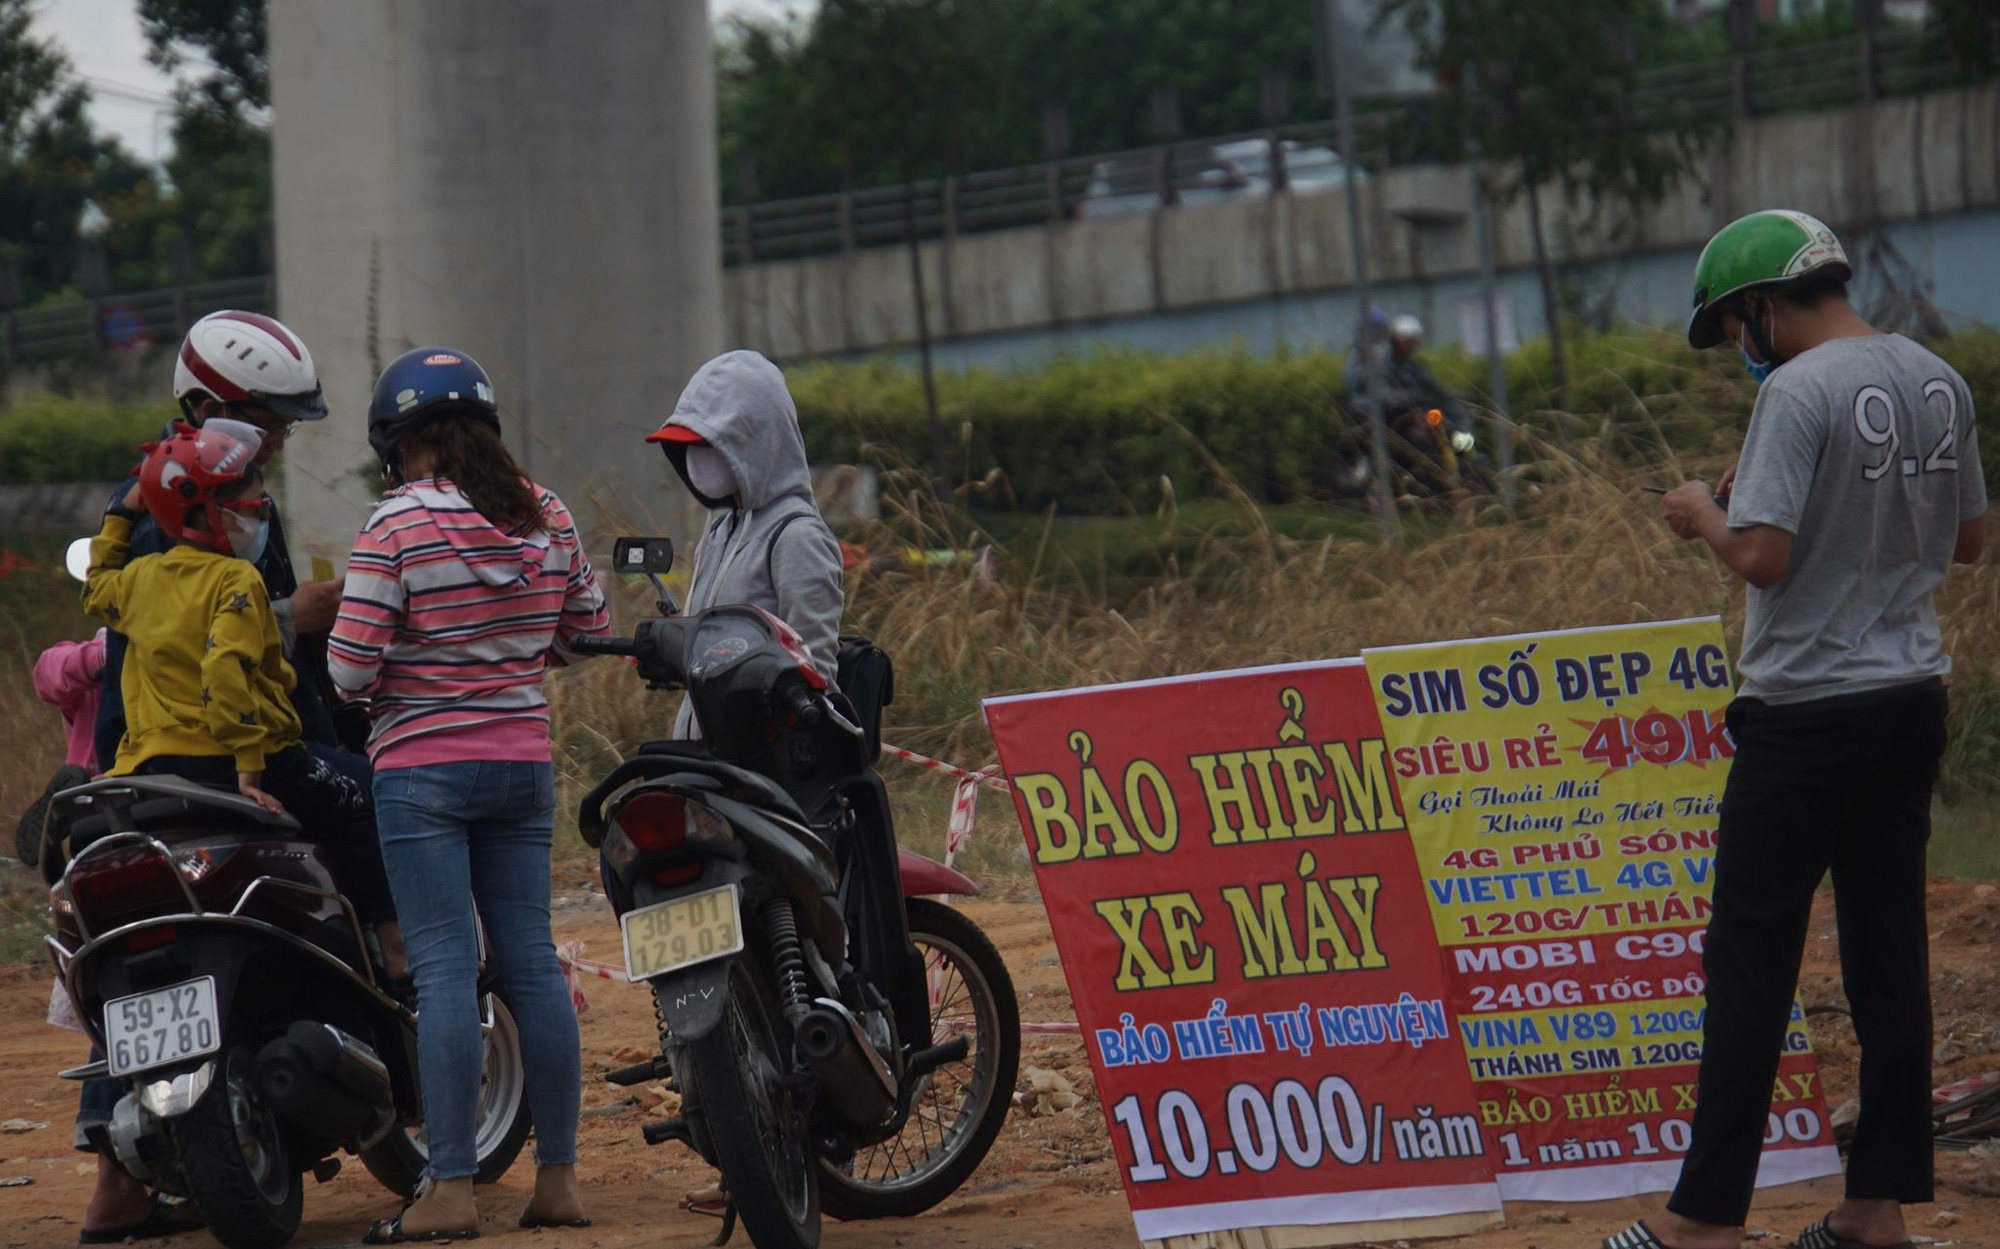 Bảo hiểm xe máy 10.000 đồng mọc lên như nấm ở lề đường Sài Gòn, người mua nguy cơ 